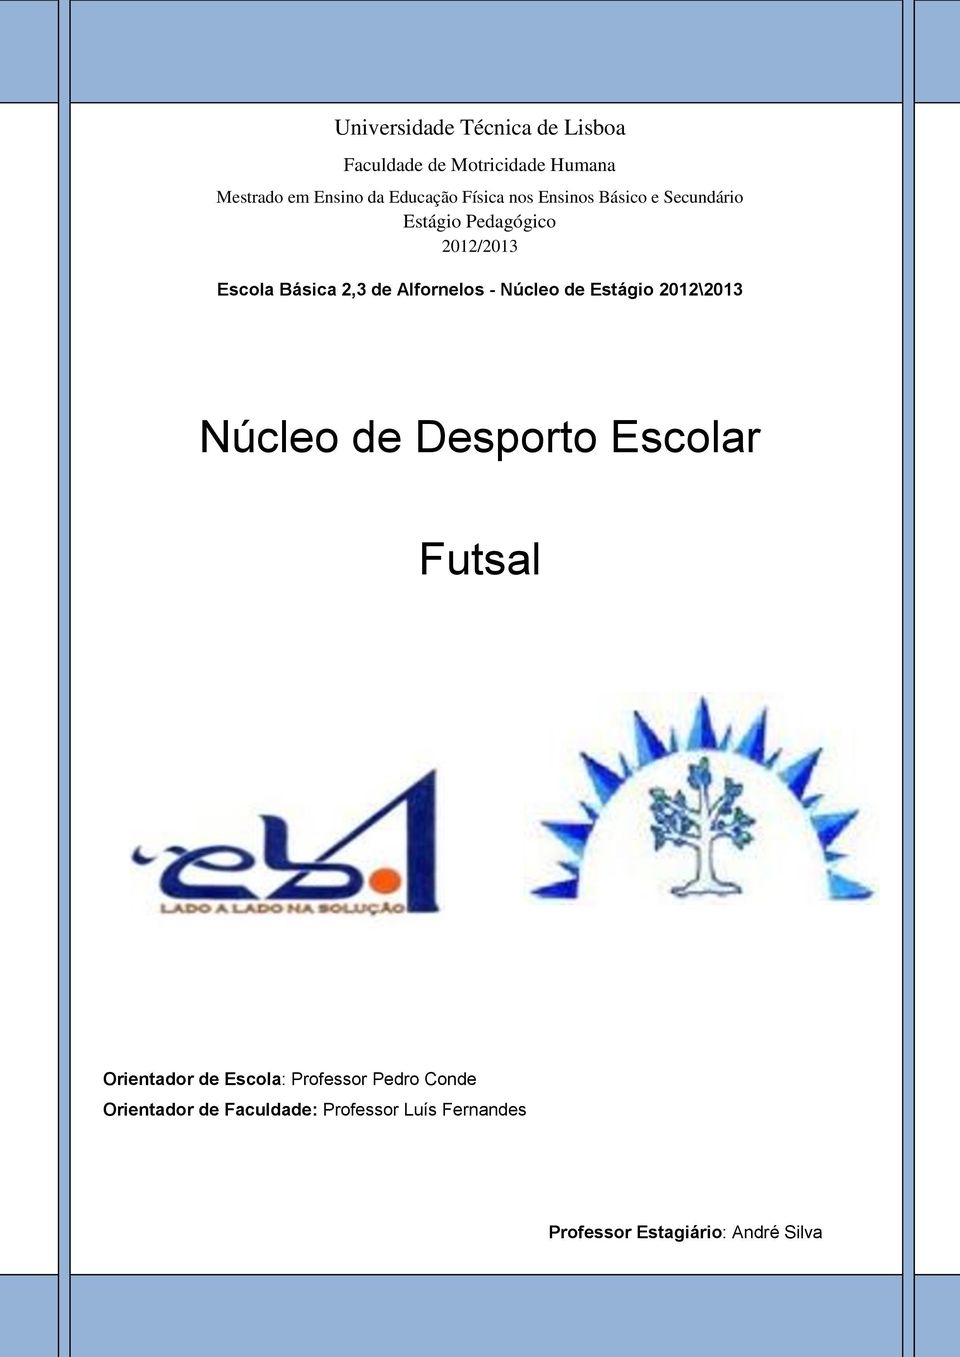 Alfornelos - Núcleo de Estágio 2012\2013 Núcleo de Desporto Escolar Futsal Orientador de Escola: